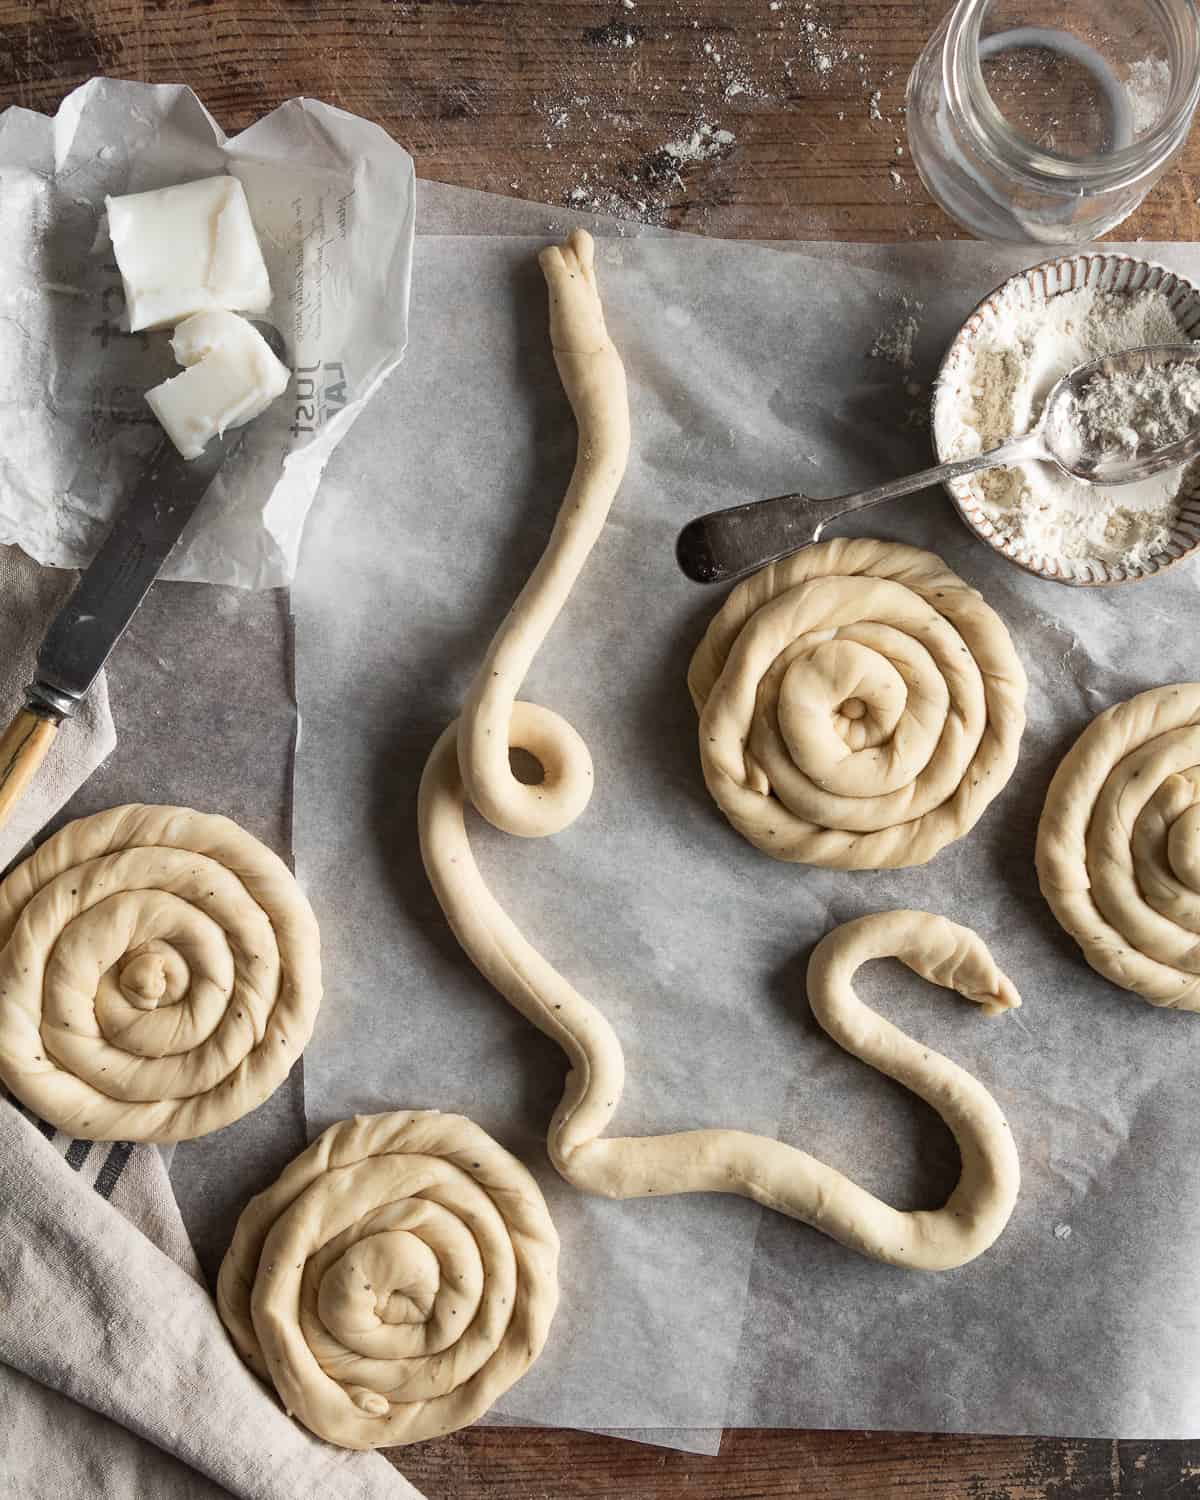 making a snails shape dough